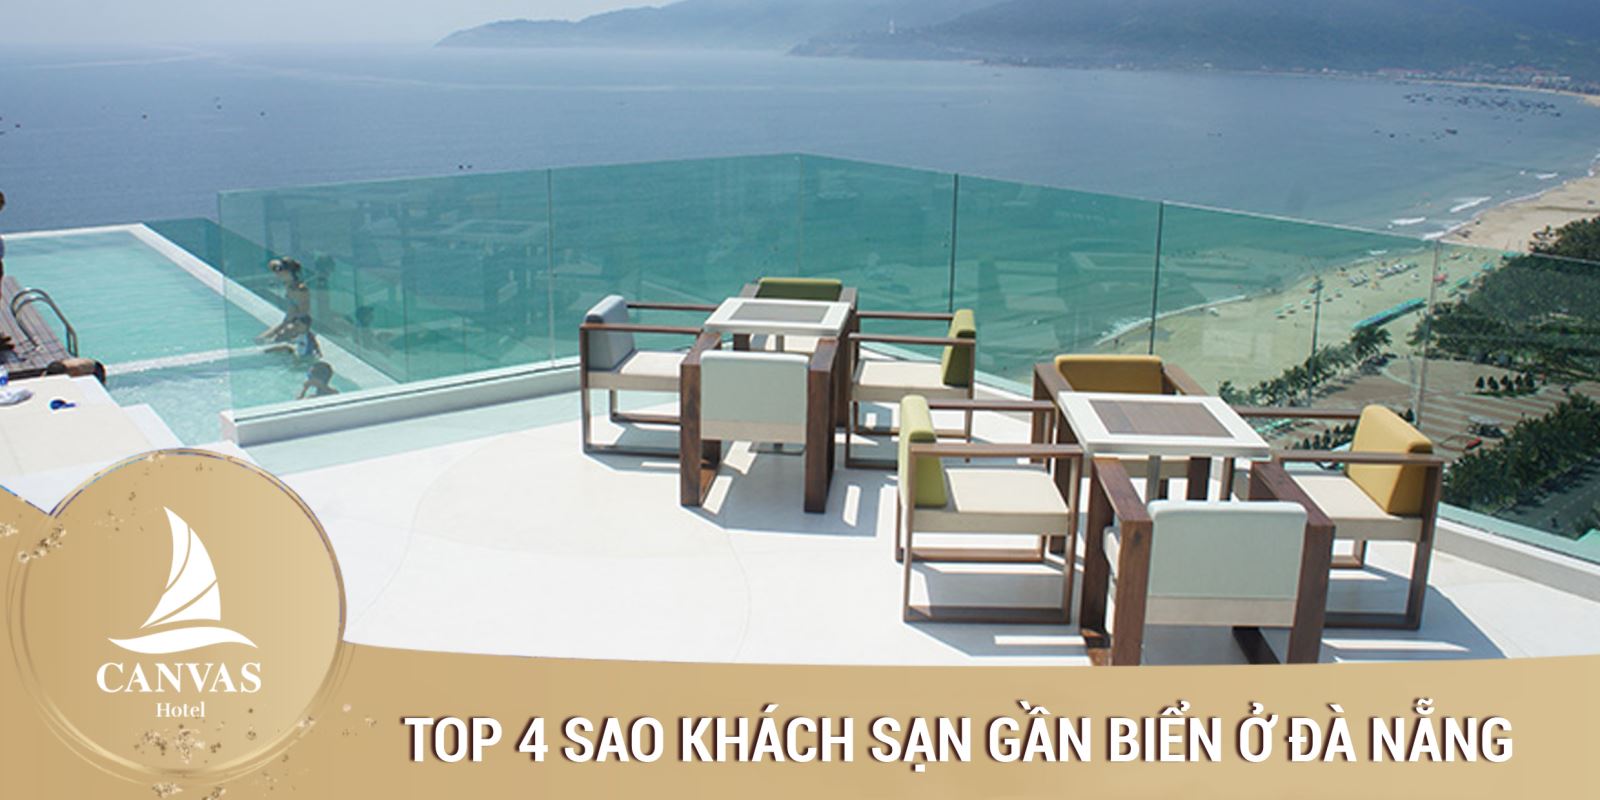 Top 4 sao khách sạn gần biển ở đà nẵng 